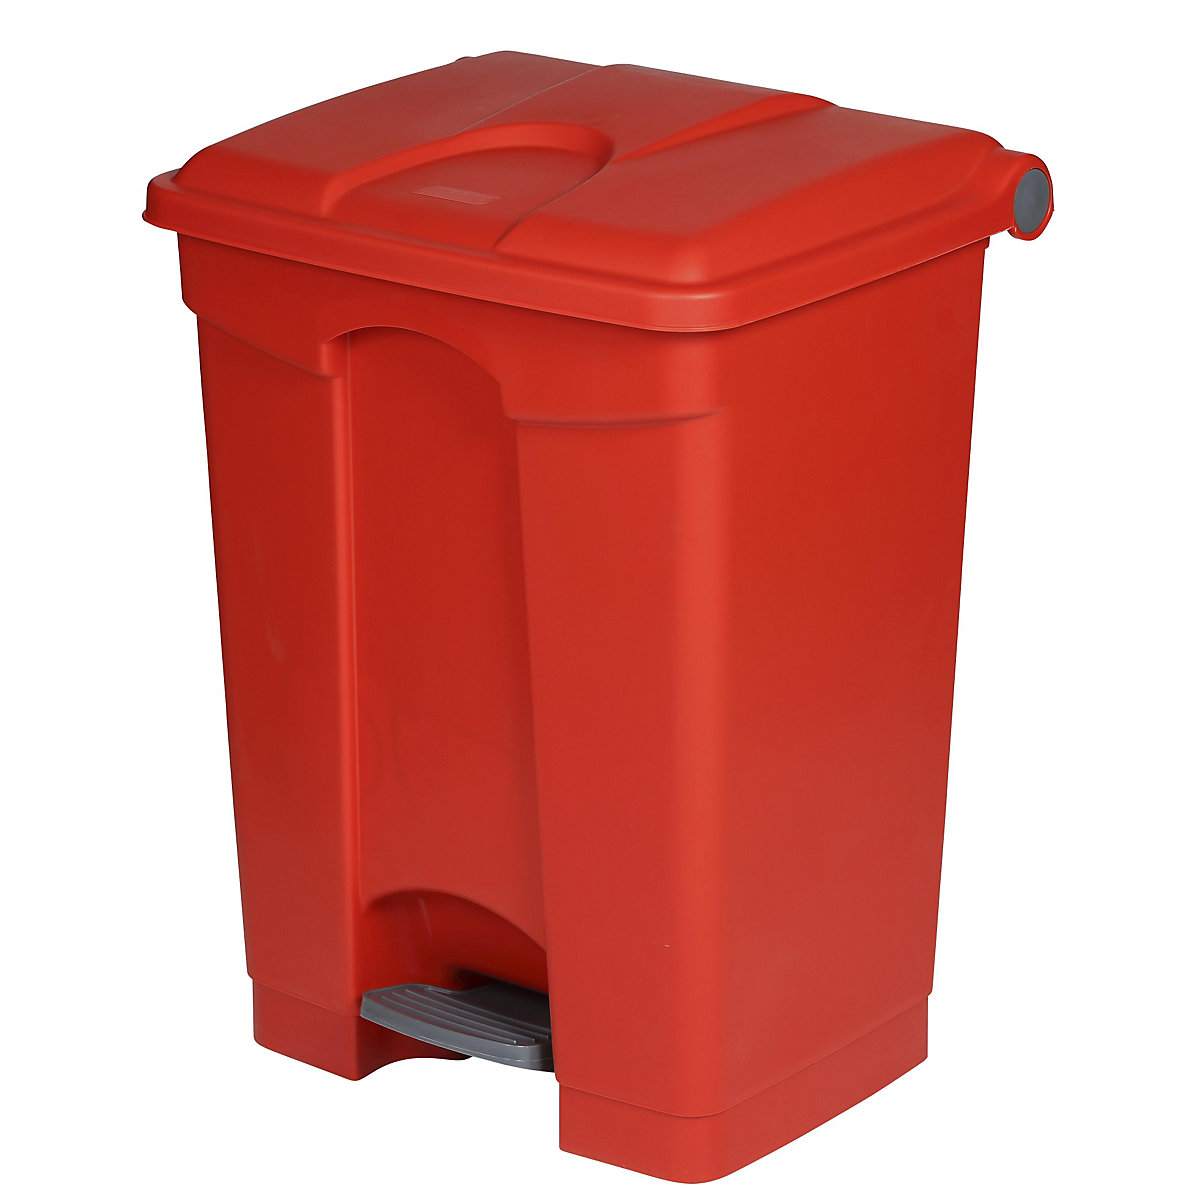 Spremnik za otpad s papučicom, volumen 70 l, ŠxVxD 505 x 675 x 415 mm, u crvenoj boji-12